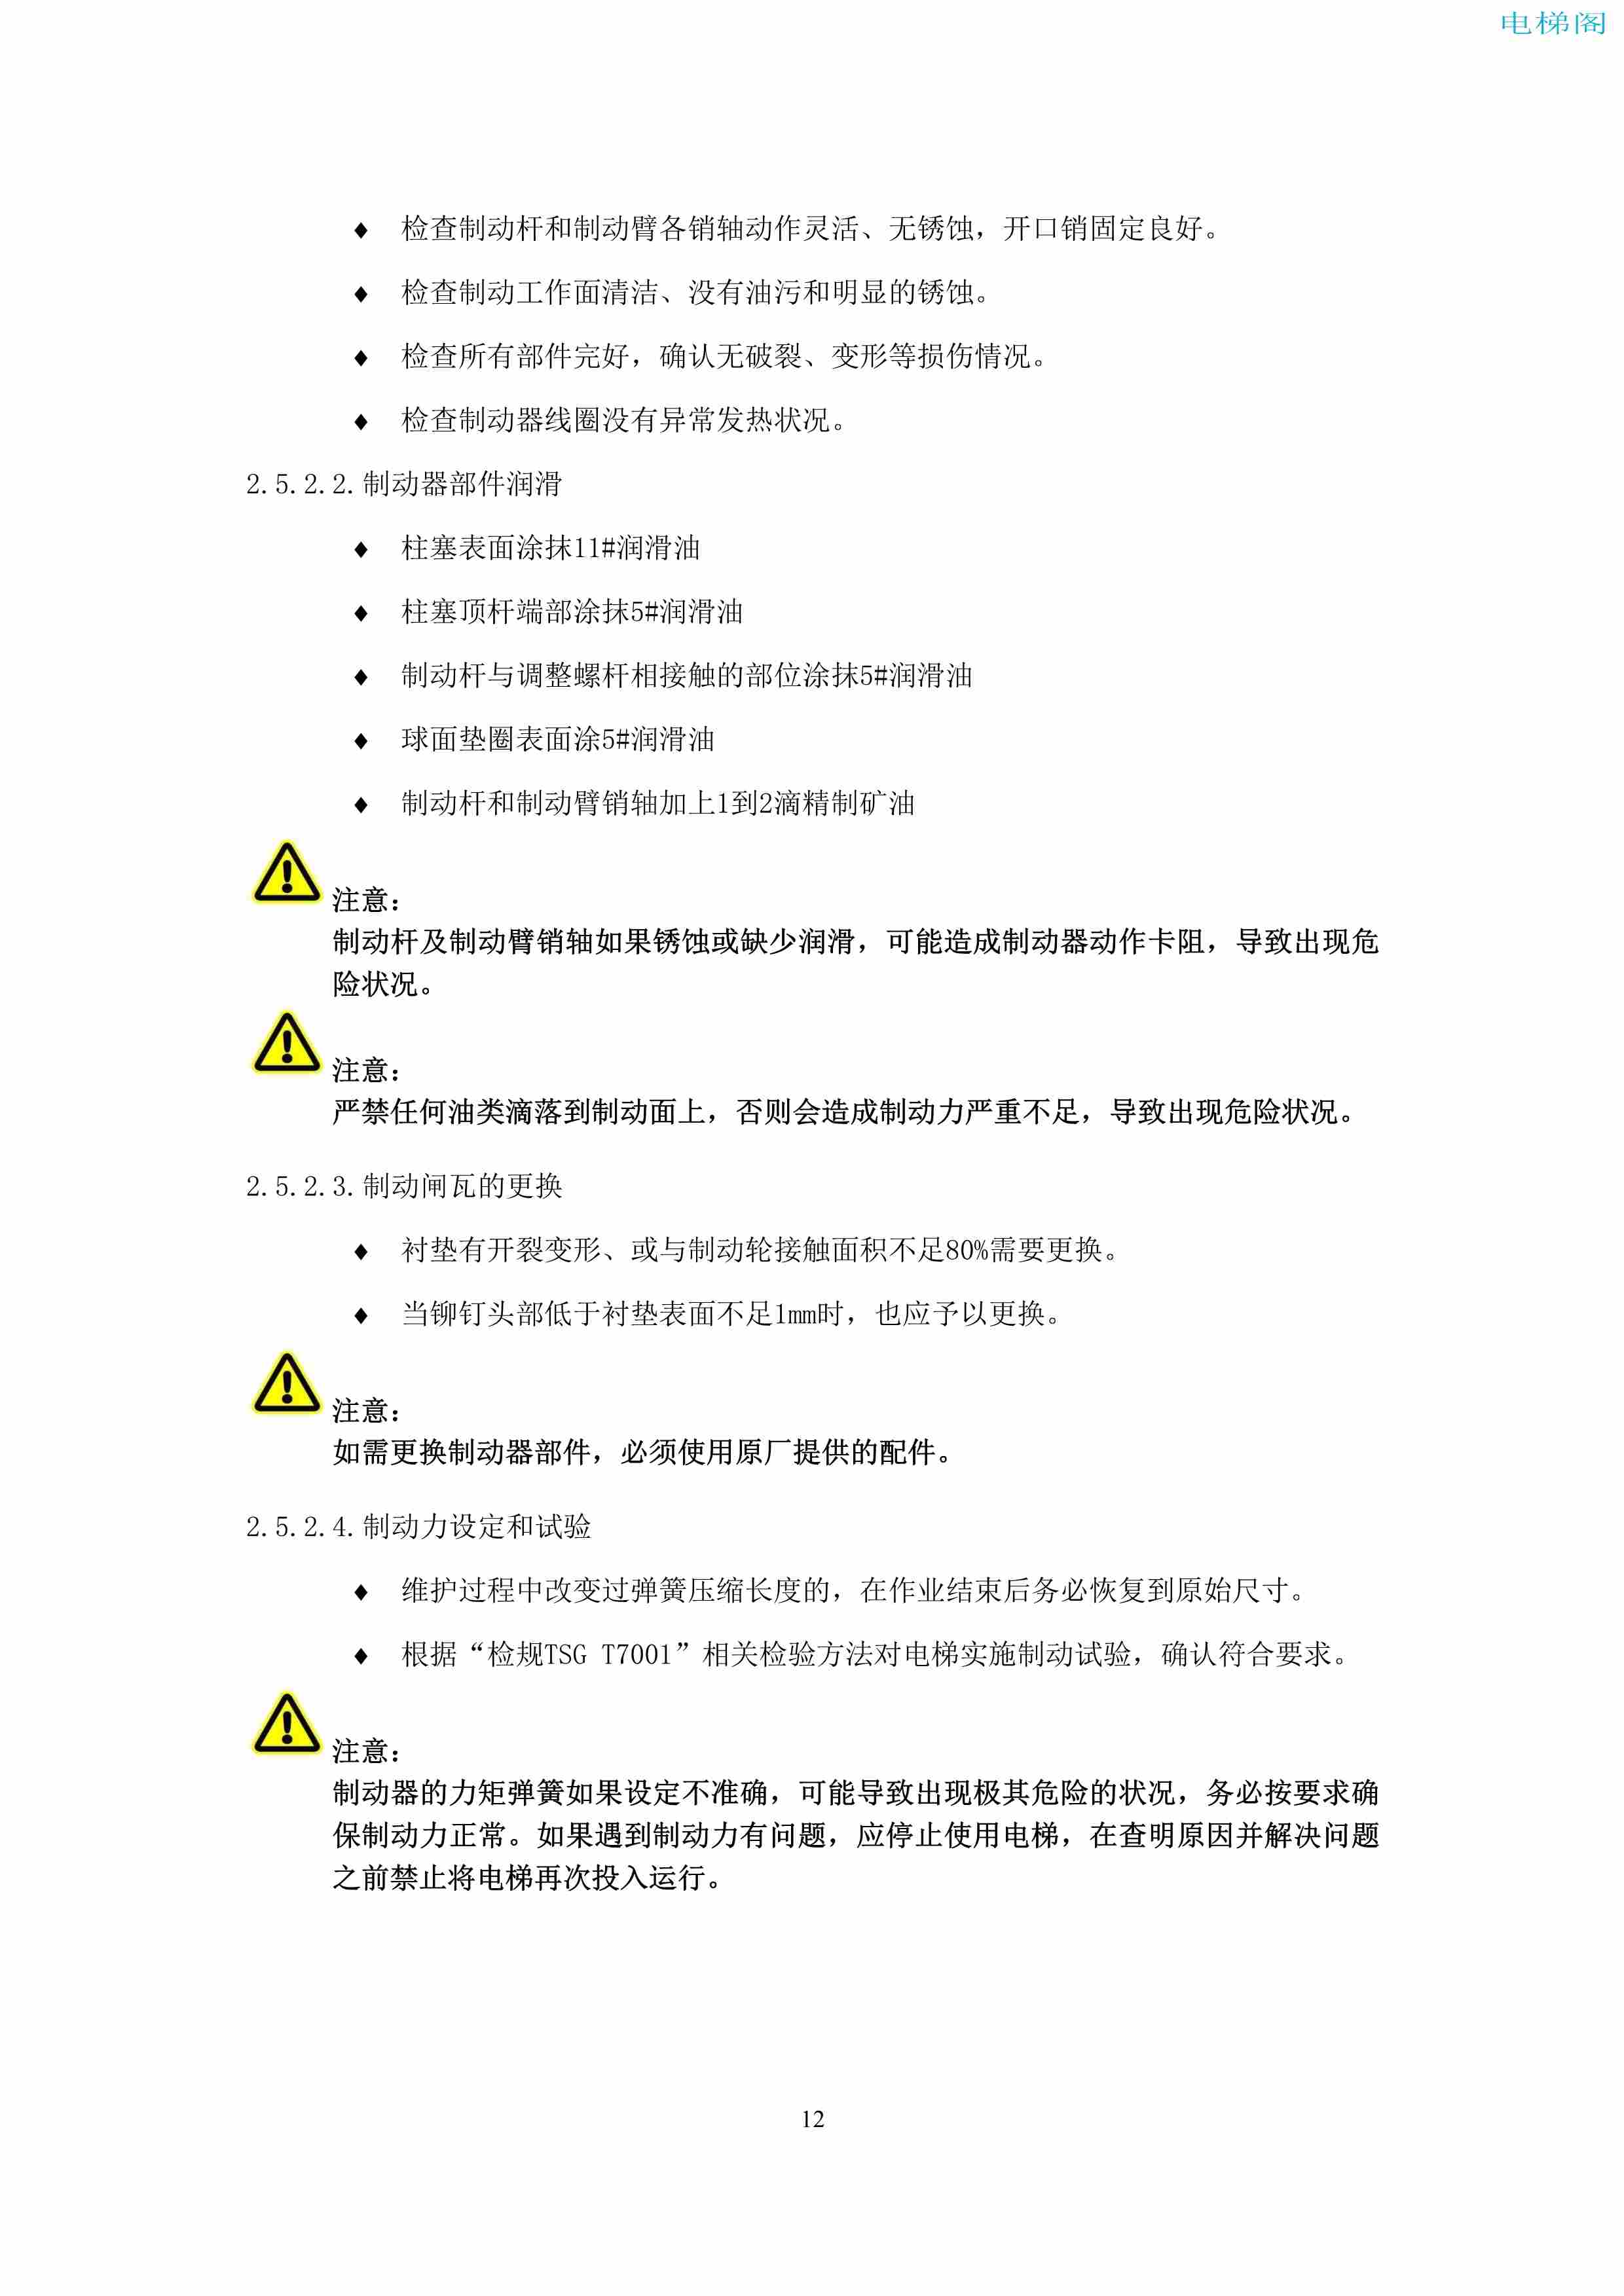 上海三菱电梯有限公司电梯制动器维护作业要领汇编_14.jpg